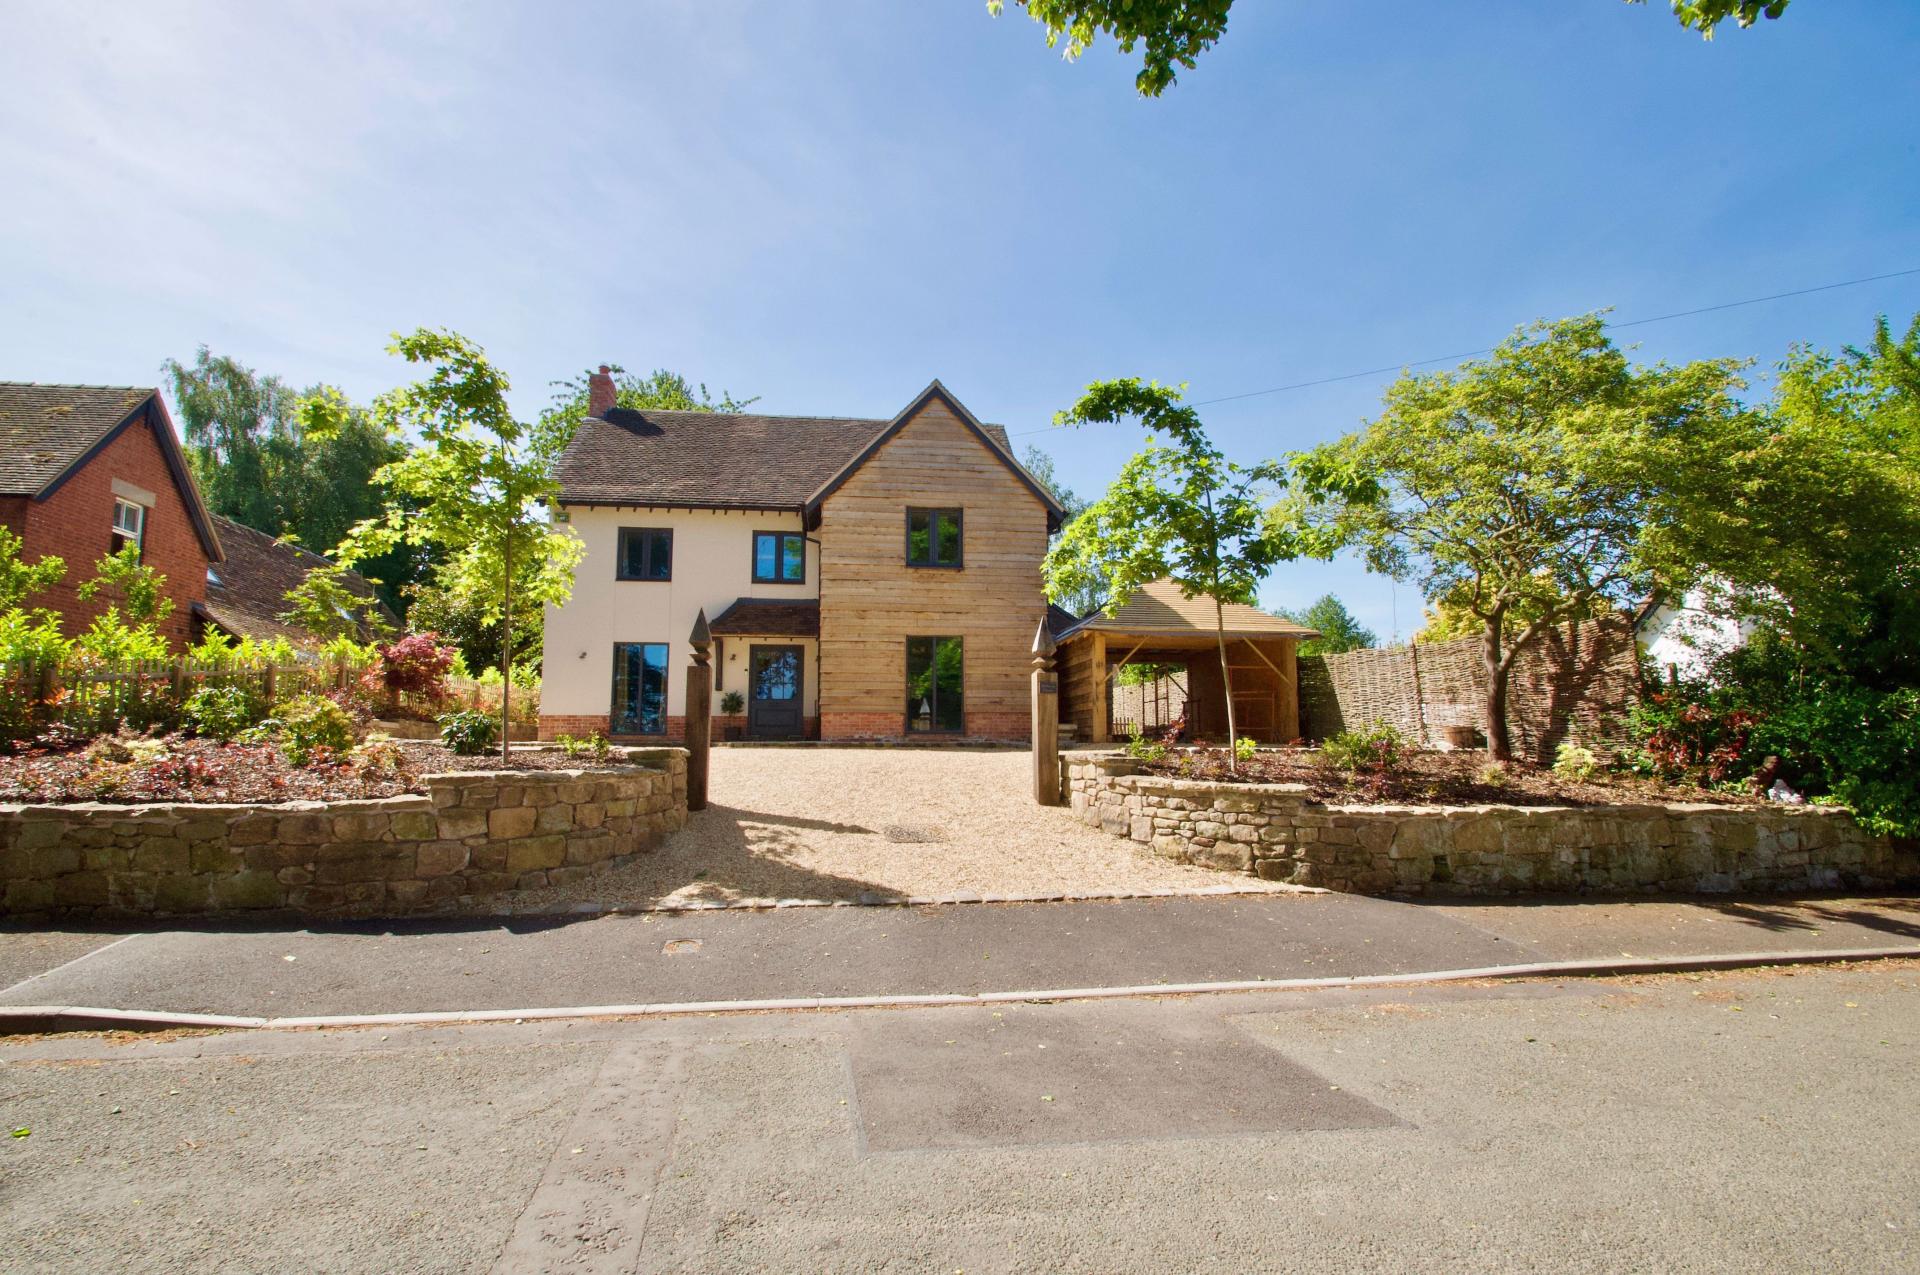 shropshire contemporary sunny home for sale